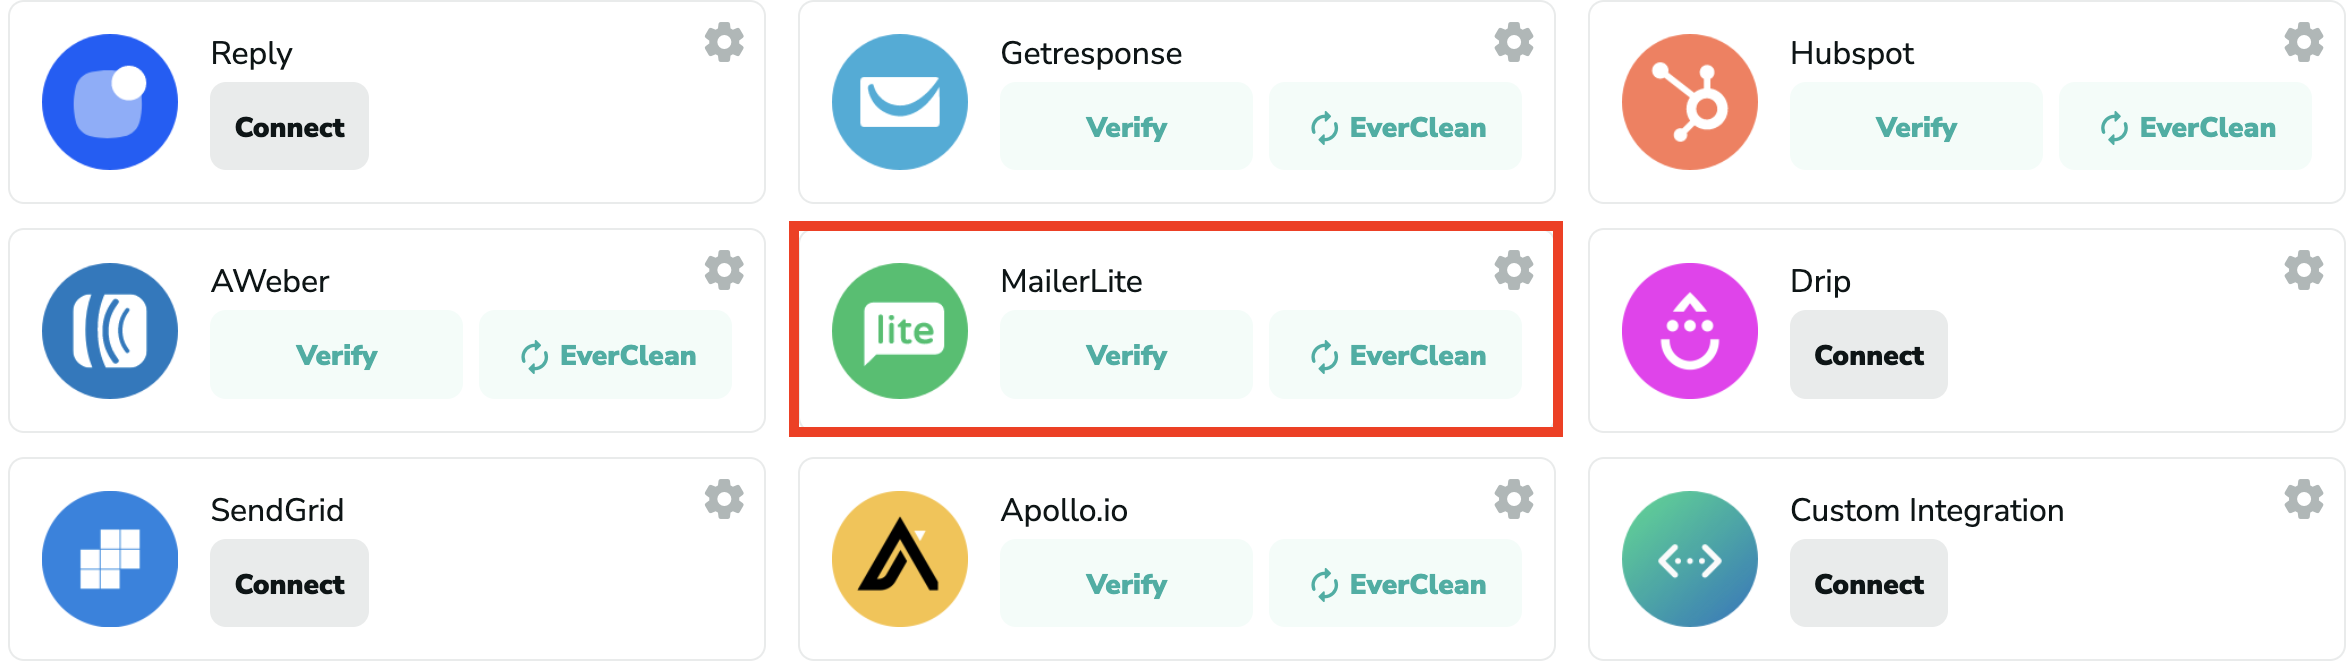 MailerLite verification in Million Verifier list